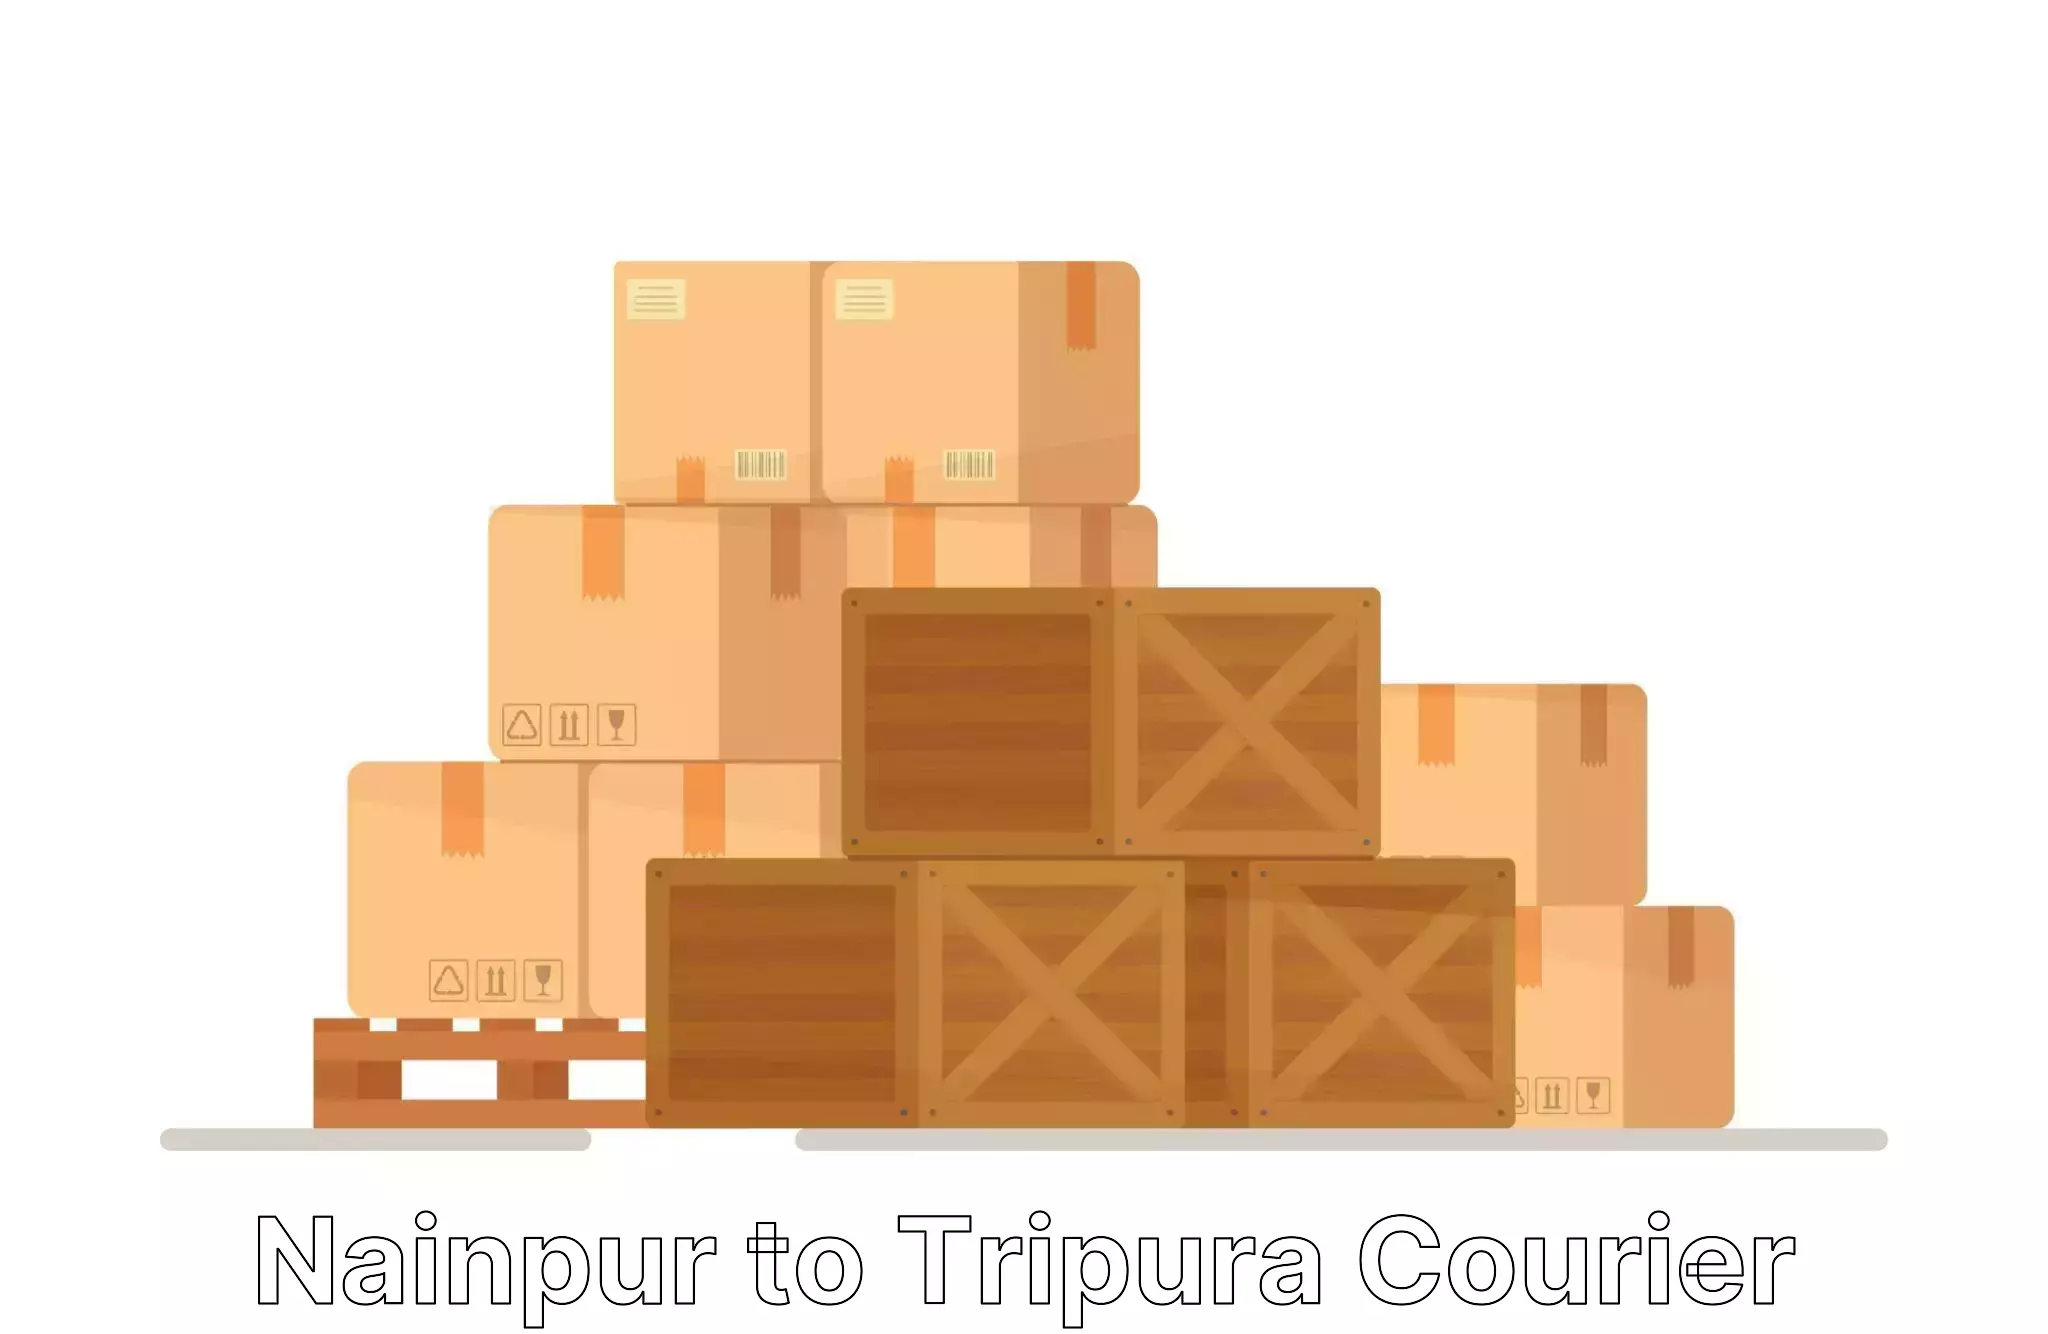 Professional furniture shifting Nainpur to North Tripura